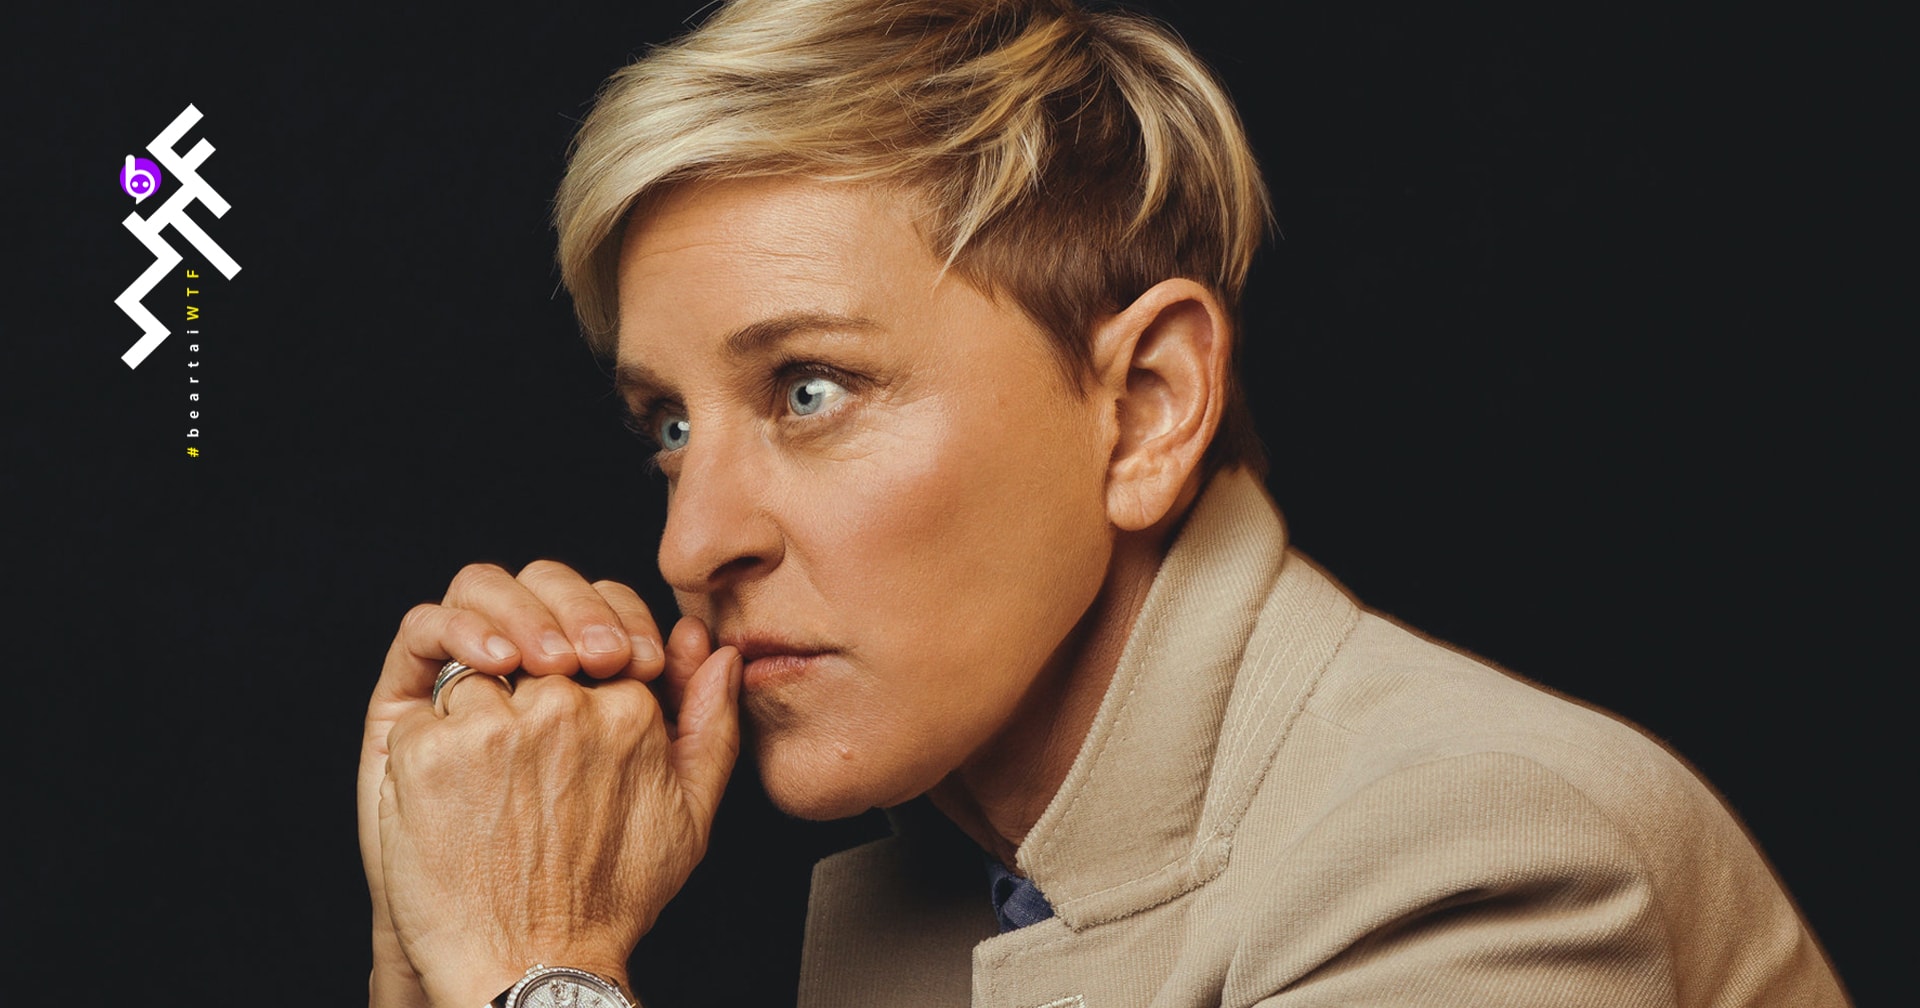 Ellen DeGeneres พิธีกรดังออกมาขอโทษ หลังทีมงานแฉ ถูกโปรดิวเซอร์รายการทำอนาจาร